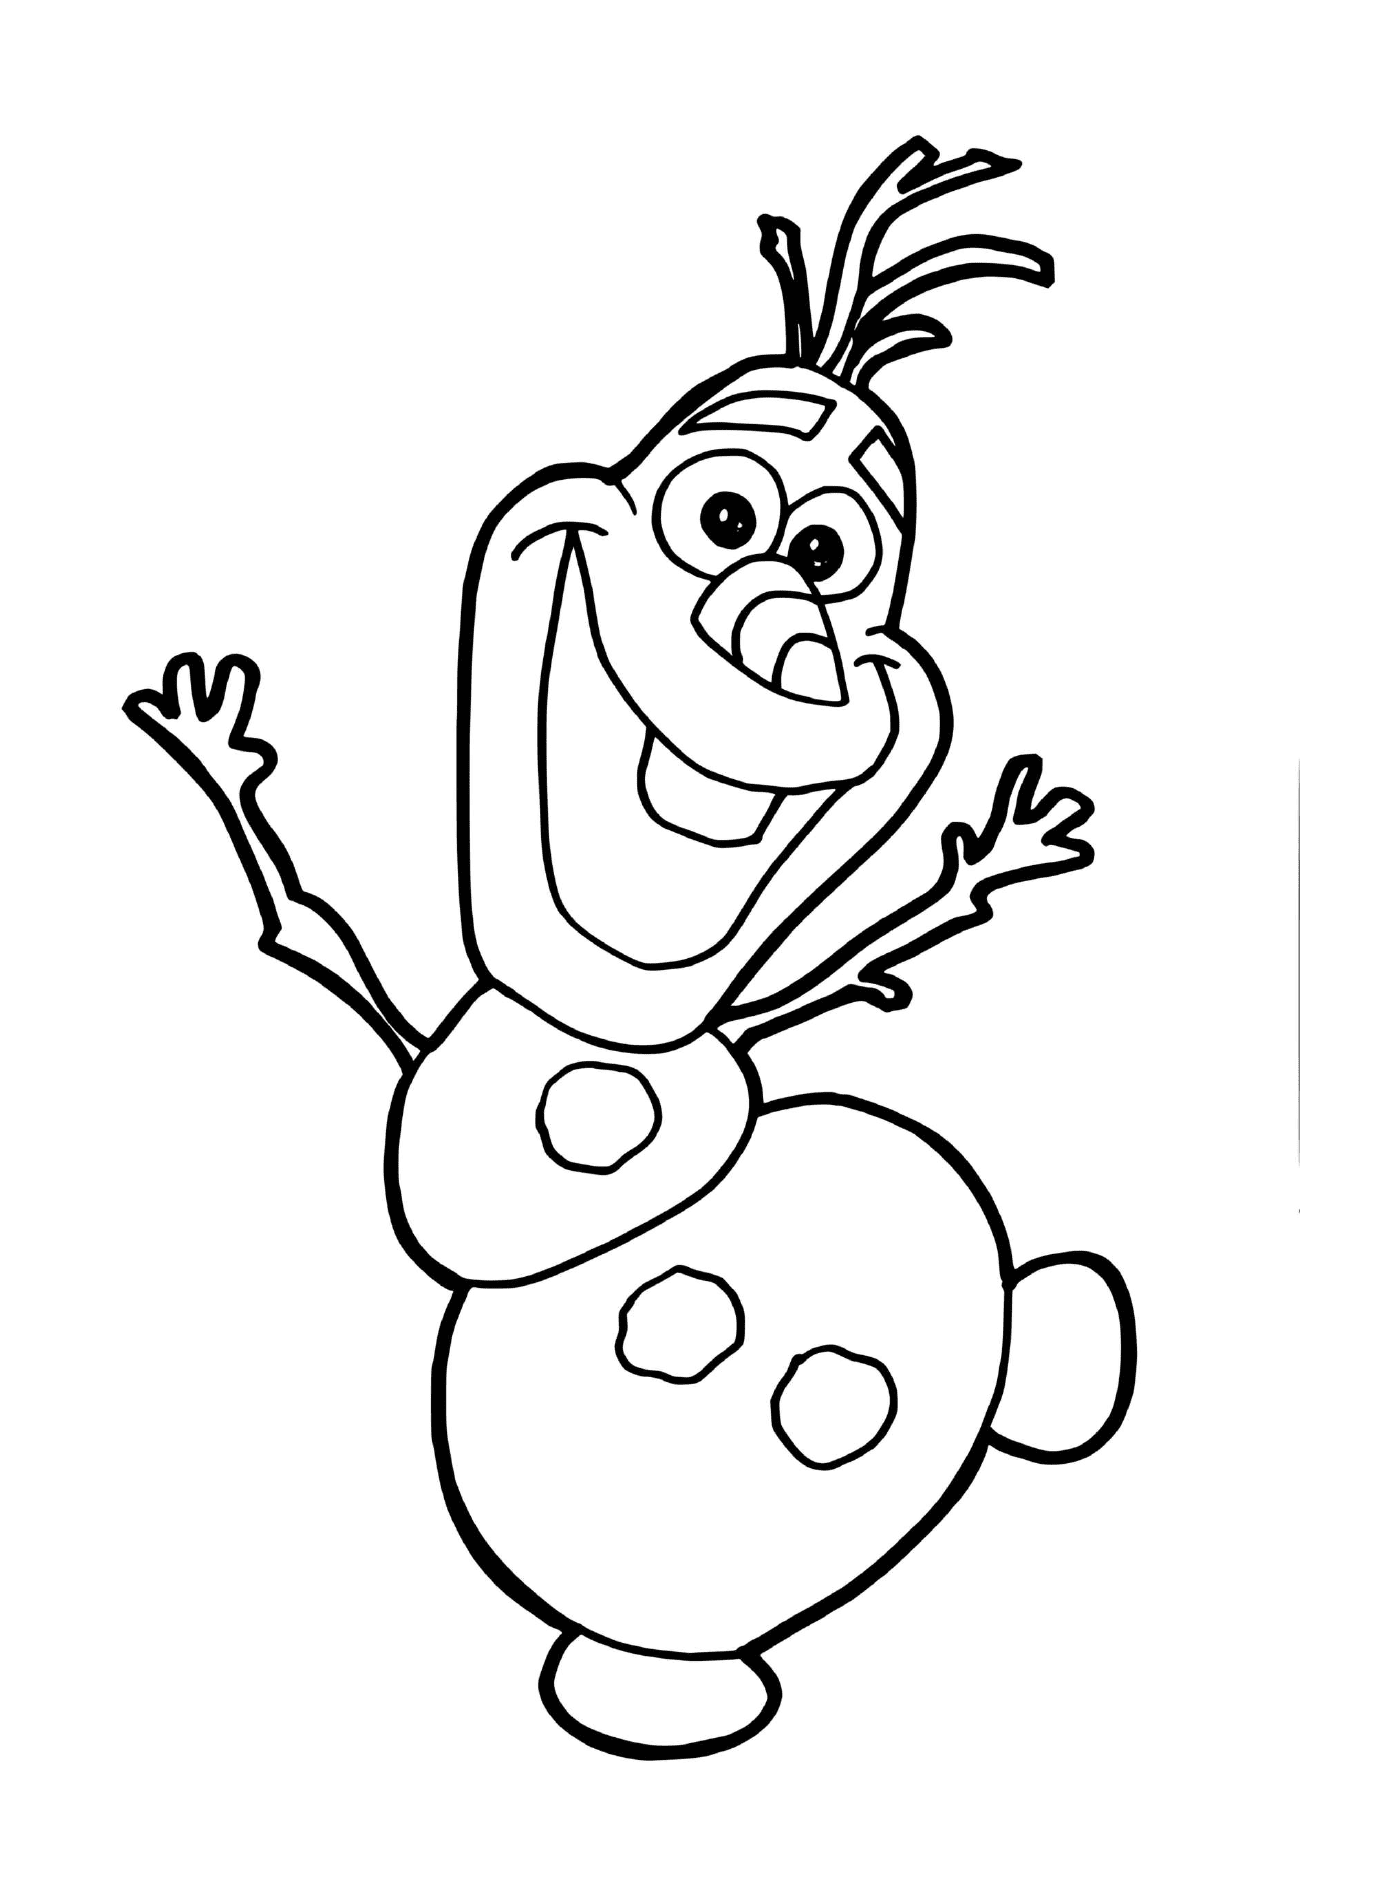   Olaf, le bonhomme de neige de La Reine des neiges 